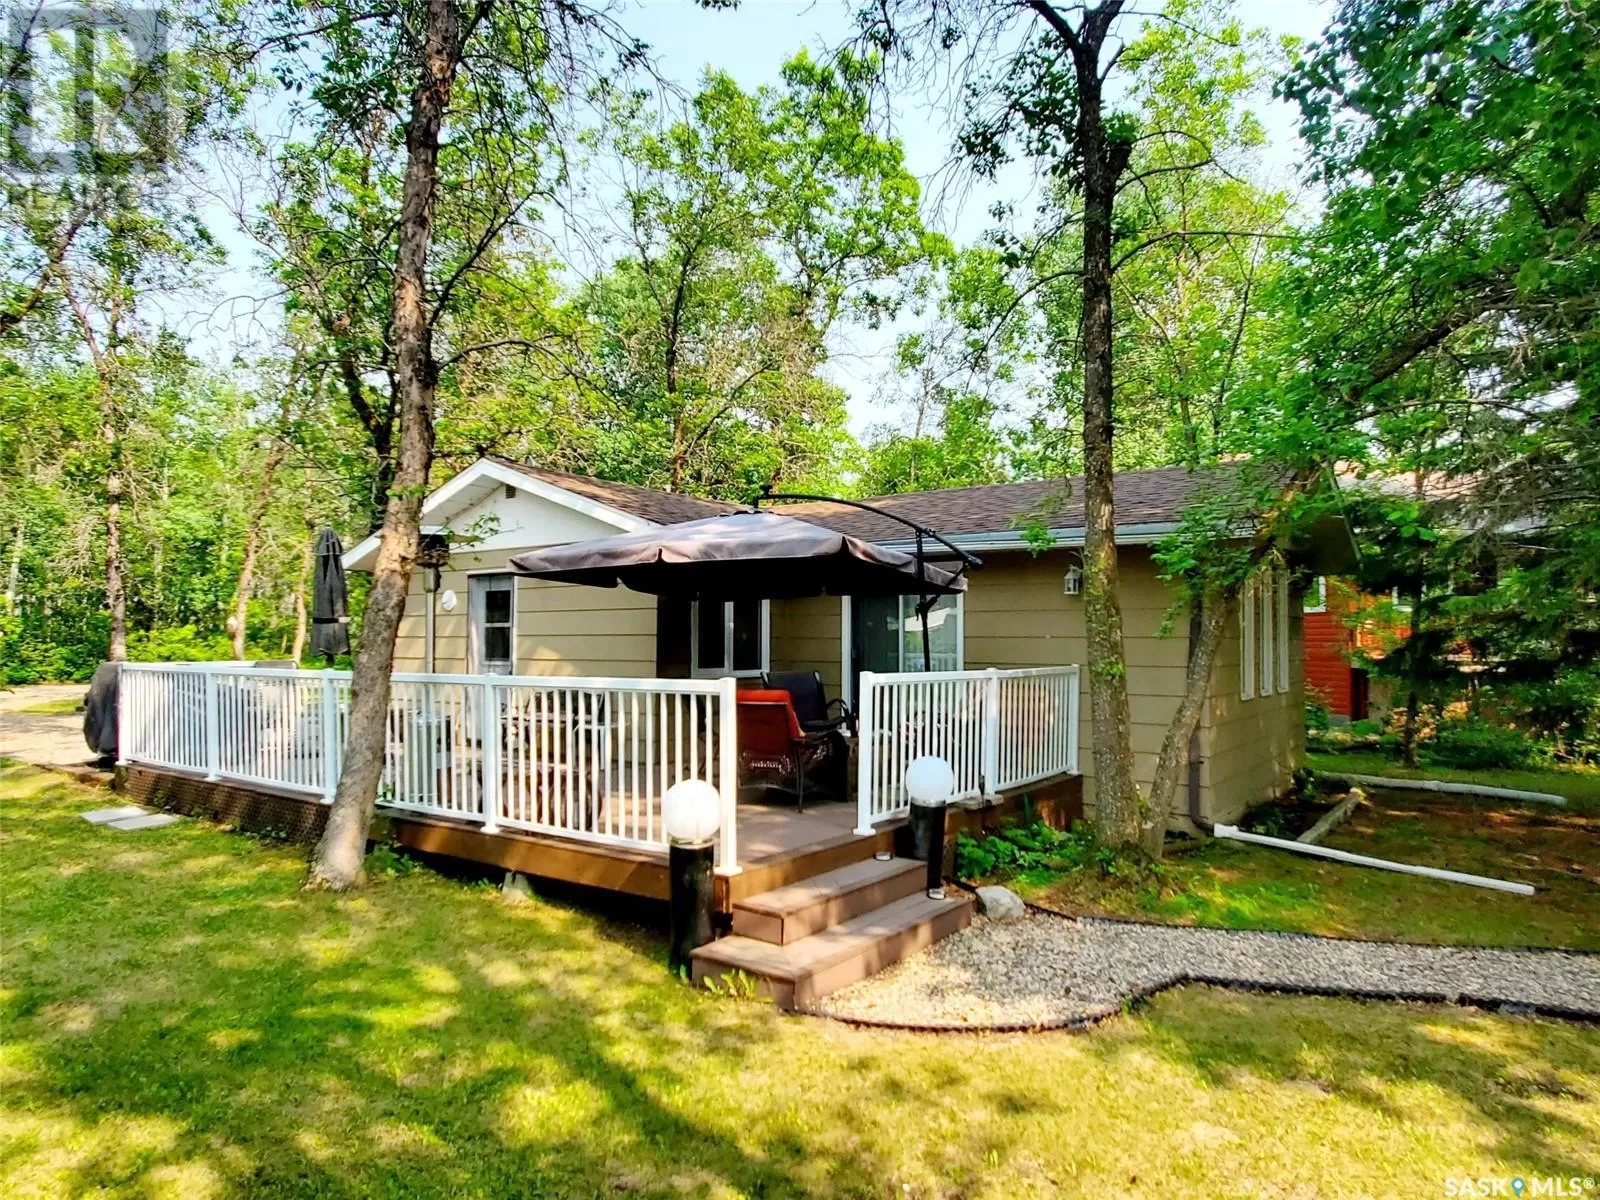 House for rent: 12 Canada Crescent, Moose Mountain Provincial Park, Saskatchewan S0C 2S0